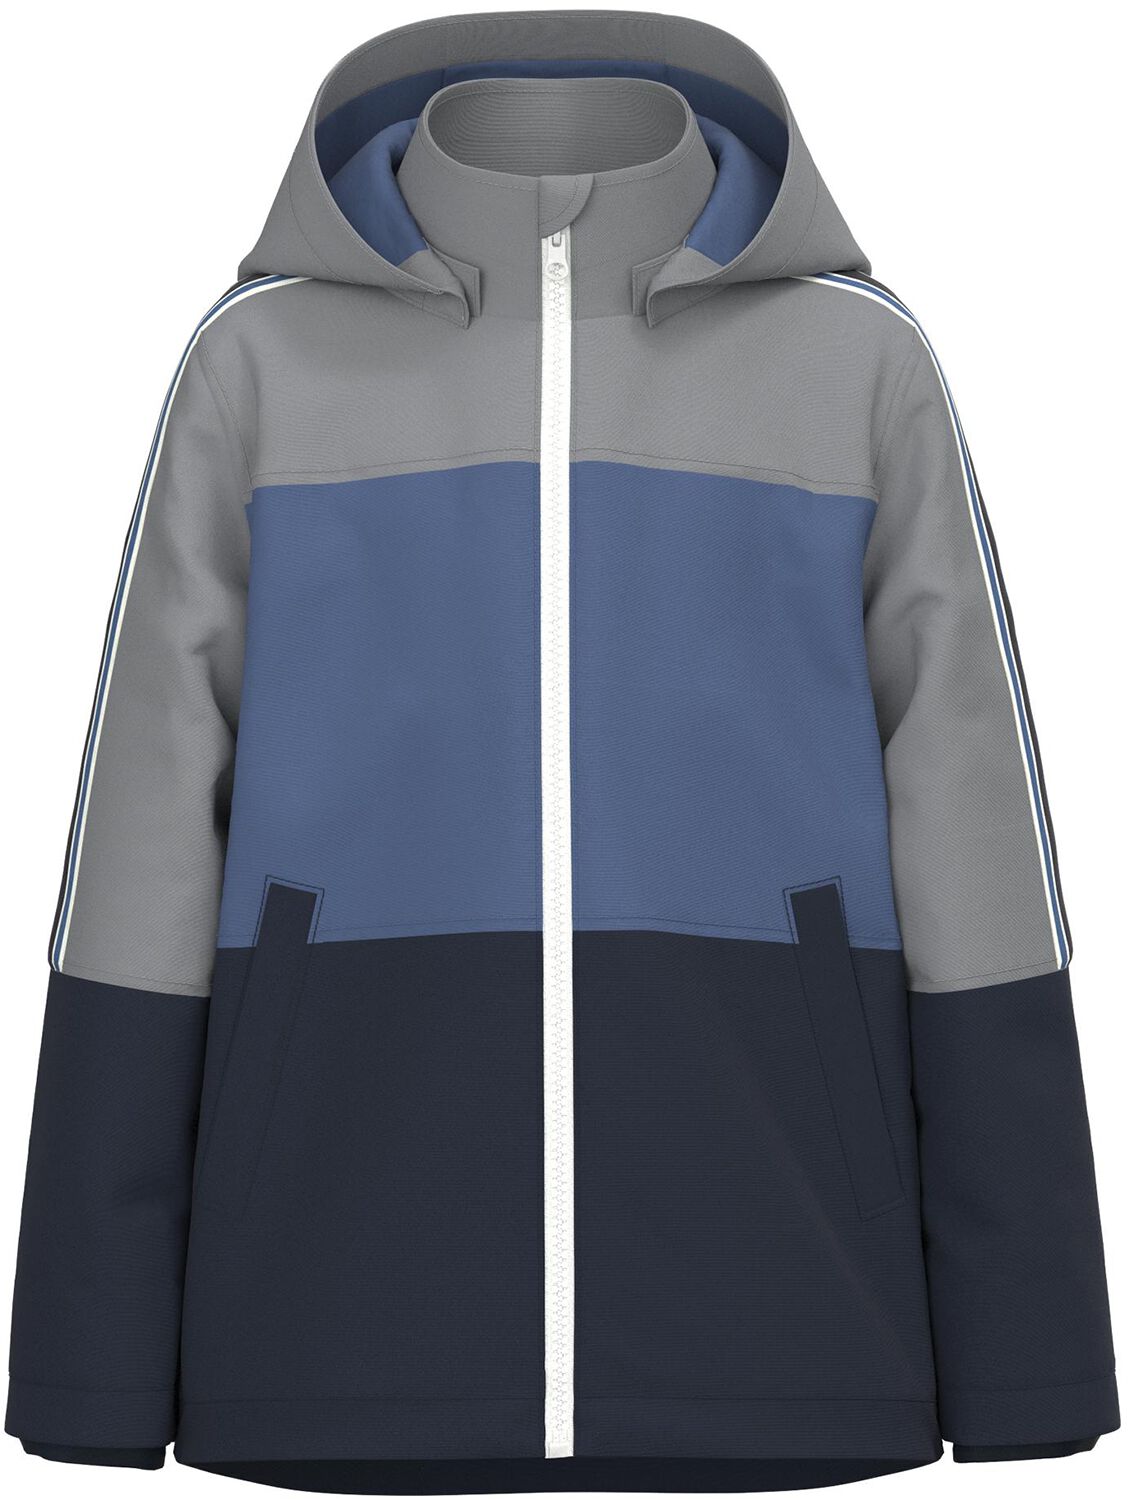 Veste de name it - Maxx Jacket Blue Block - 128 à 158 - pour garçons - gris/bleu